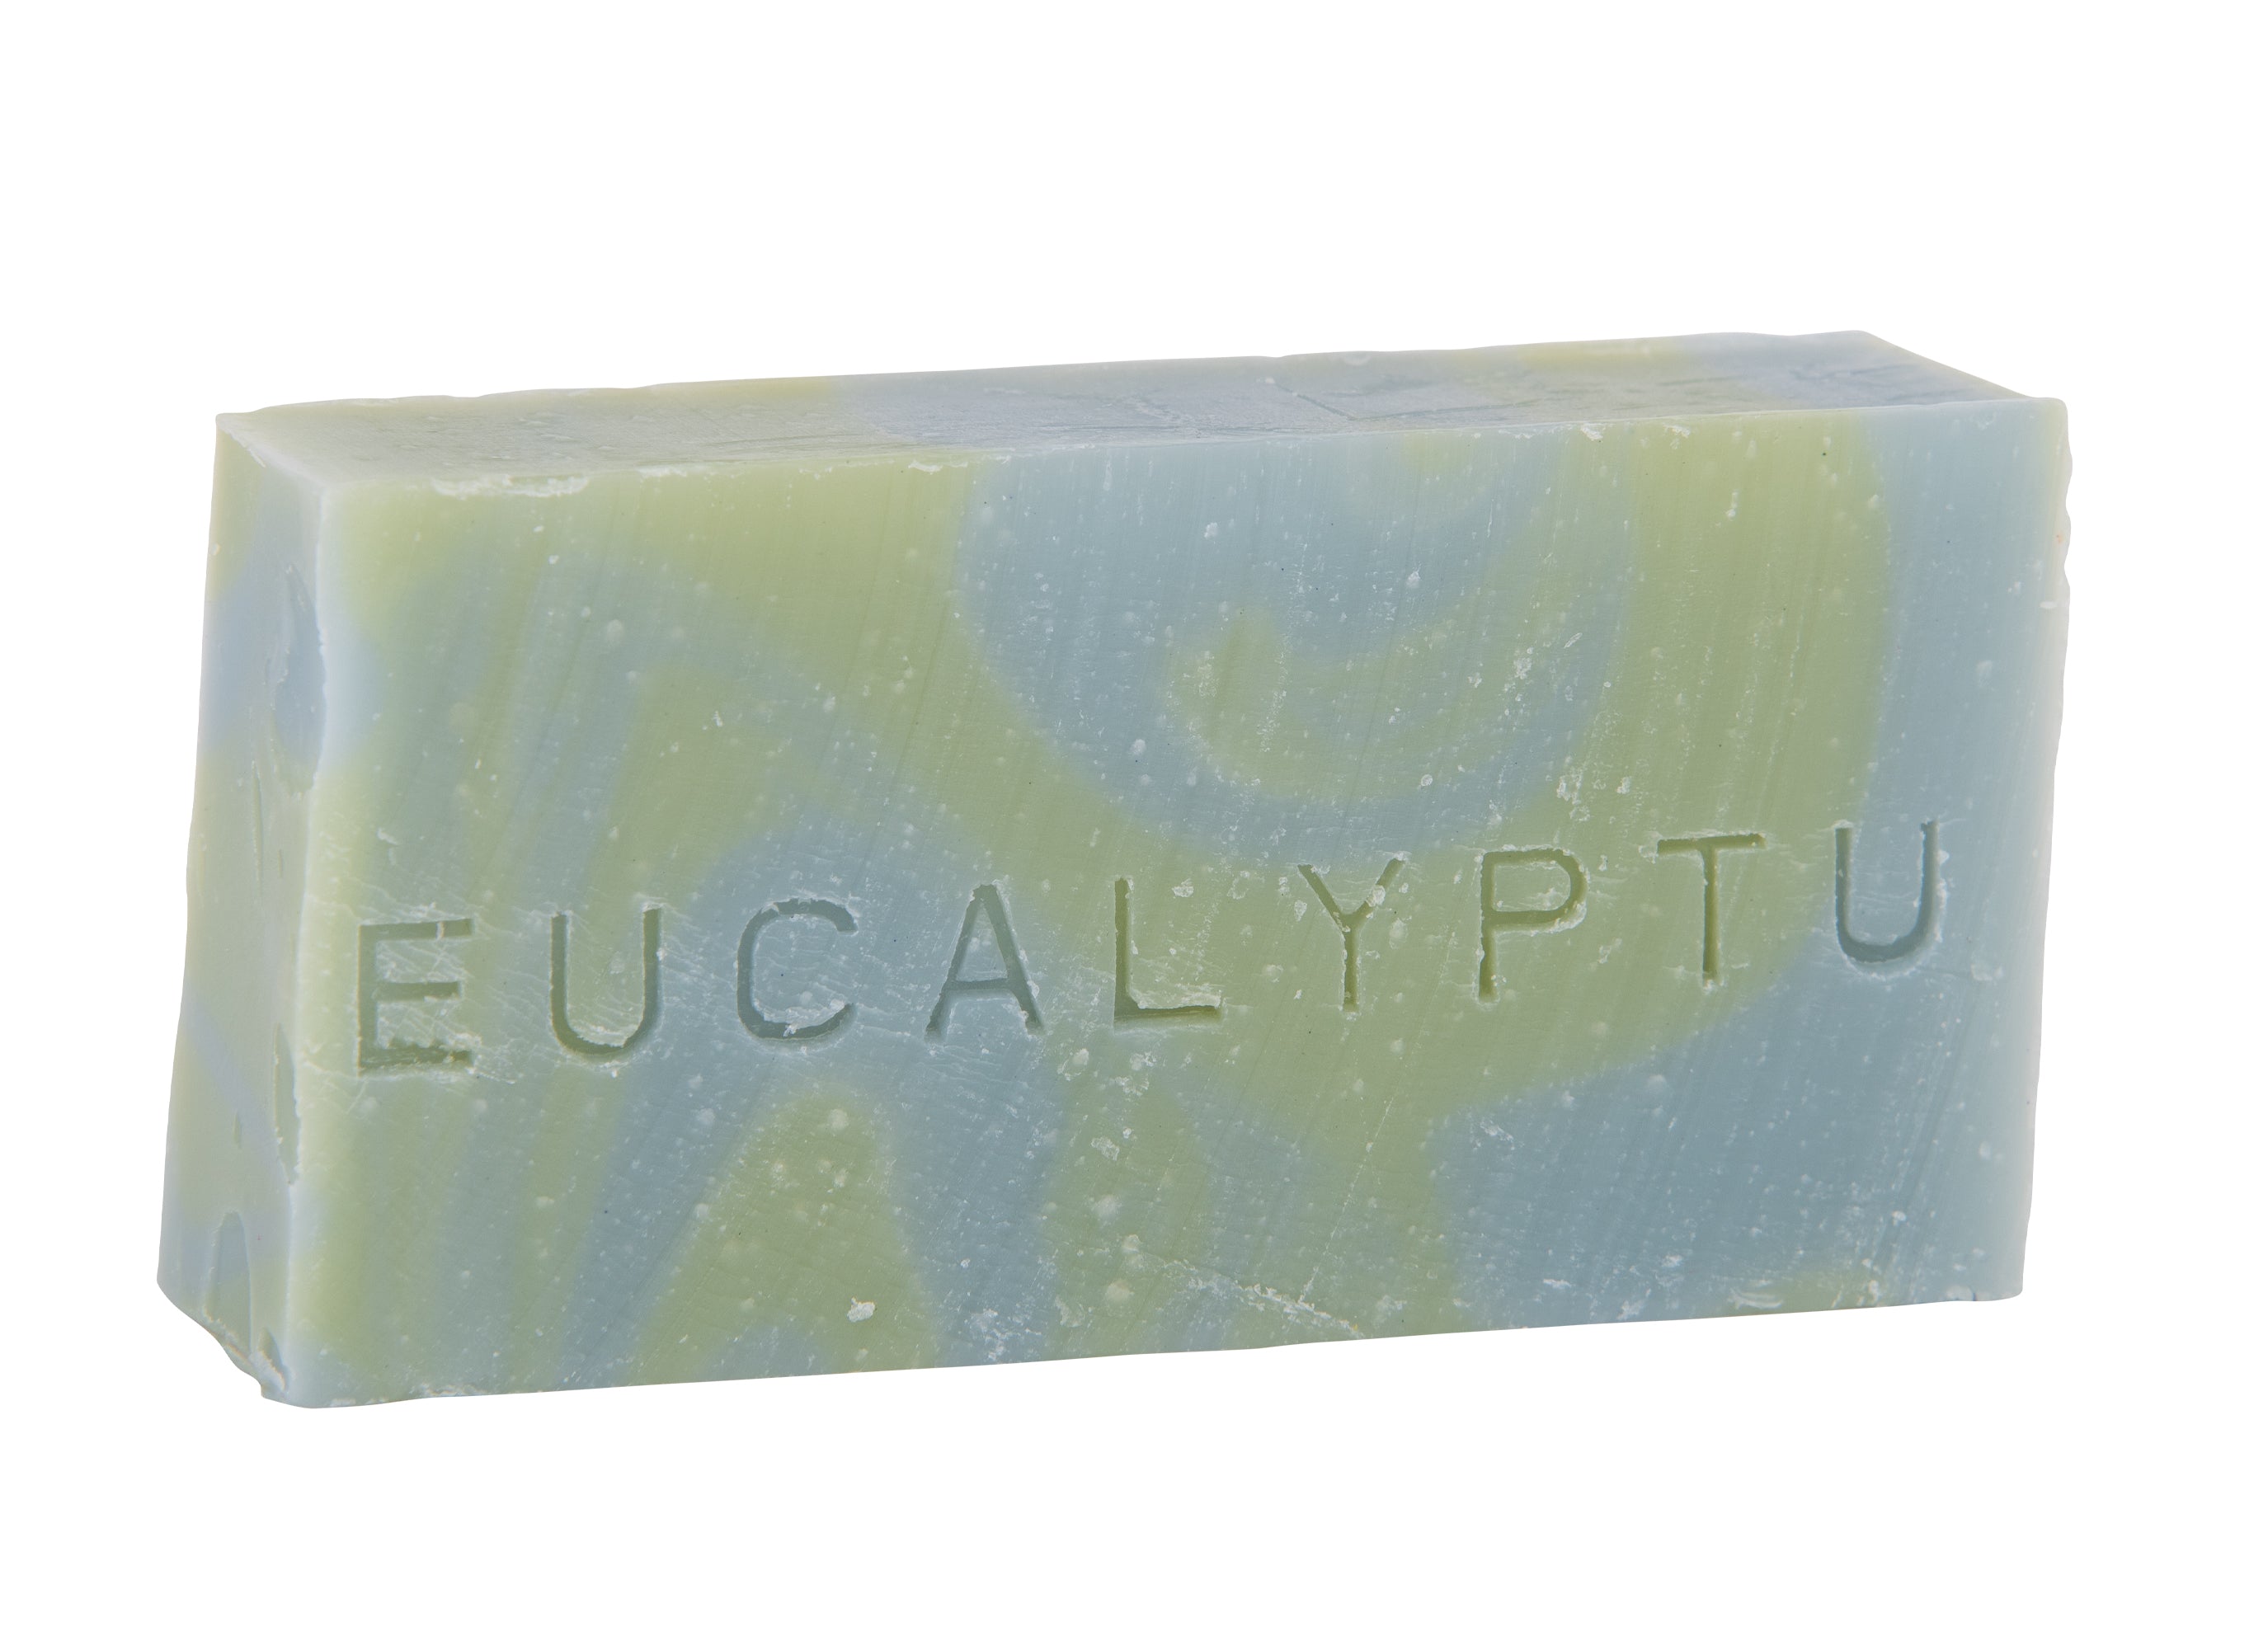 Savon corps visage 90 g. Huile essentielle eucalyptus. Bicolor marbré bleu pâle et vert pâle. Surgras à 8%.  Notre savon convient à tous les types de peau et constitue le choix idéal pour une utilisation quotidienne afin d'obtenir une peau lisse et éclatante.